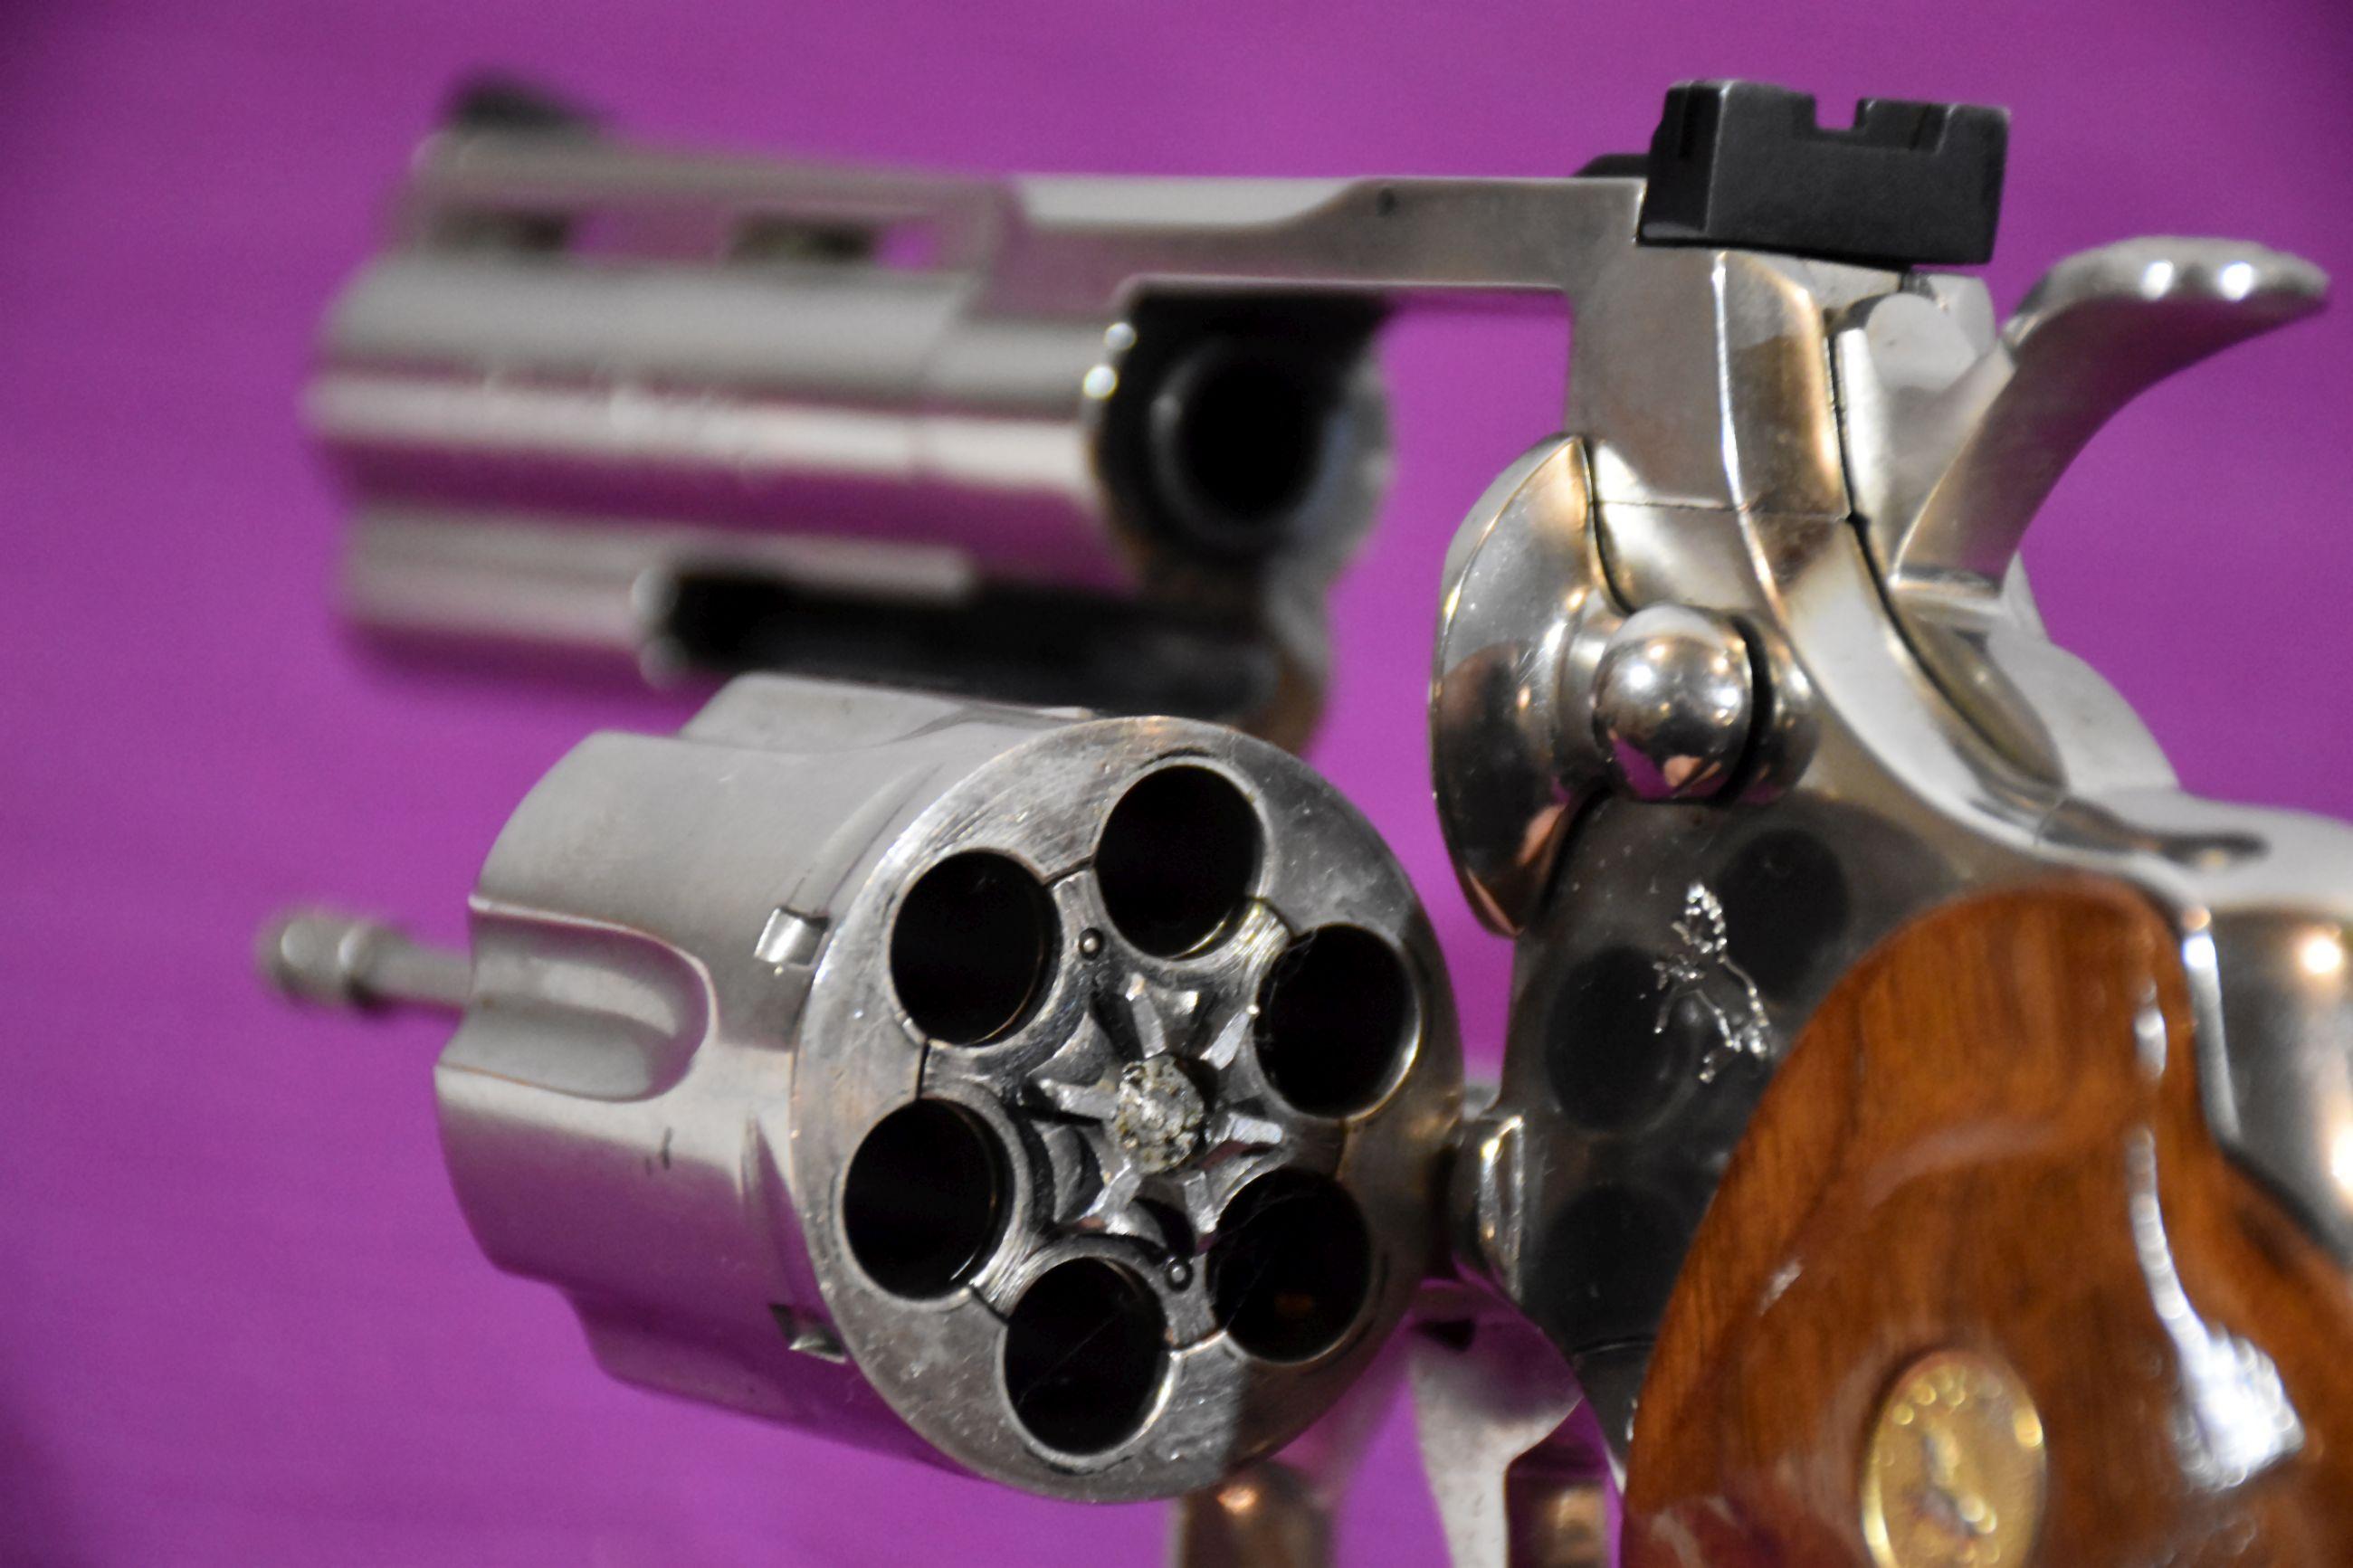 Colt Python 357 Mag Revolver, Nickel Finish, 4" Barrel, SN: V85260